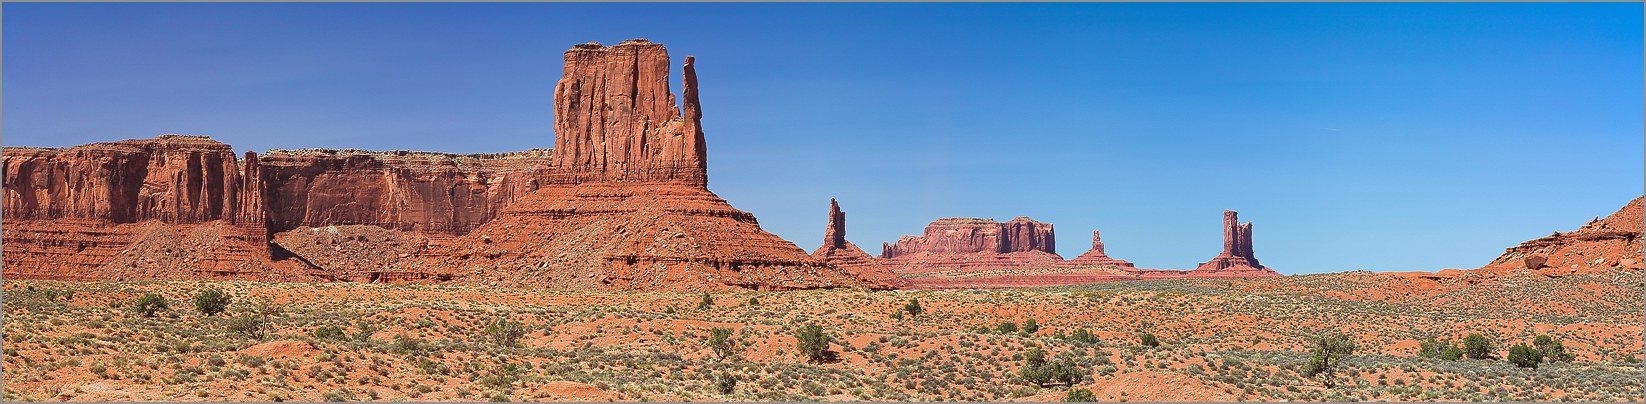 Monument Valley - Navajo Tribal Park - panomarique réalisé avec CANON 5D + EF 100 macro F2,8